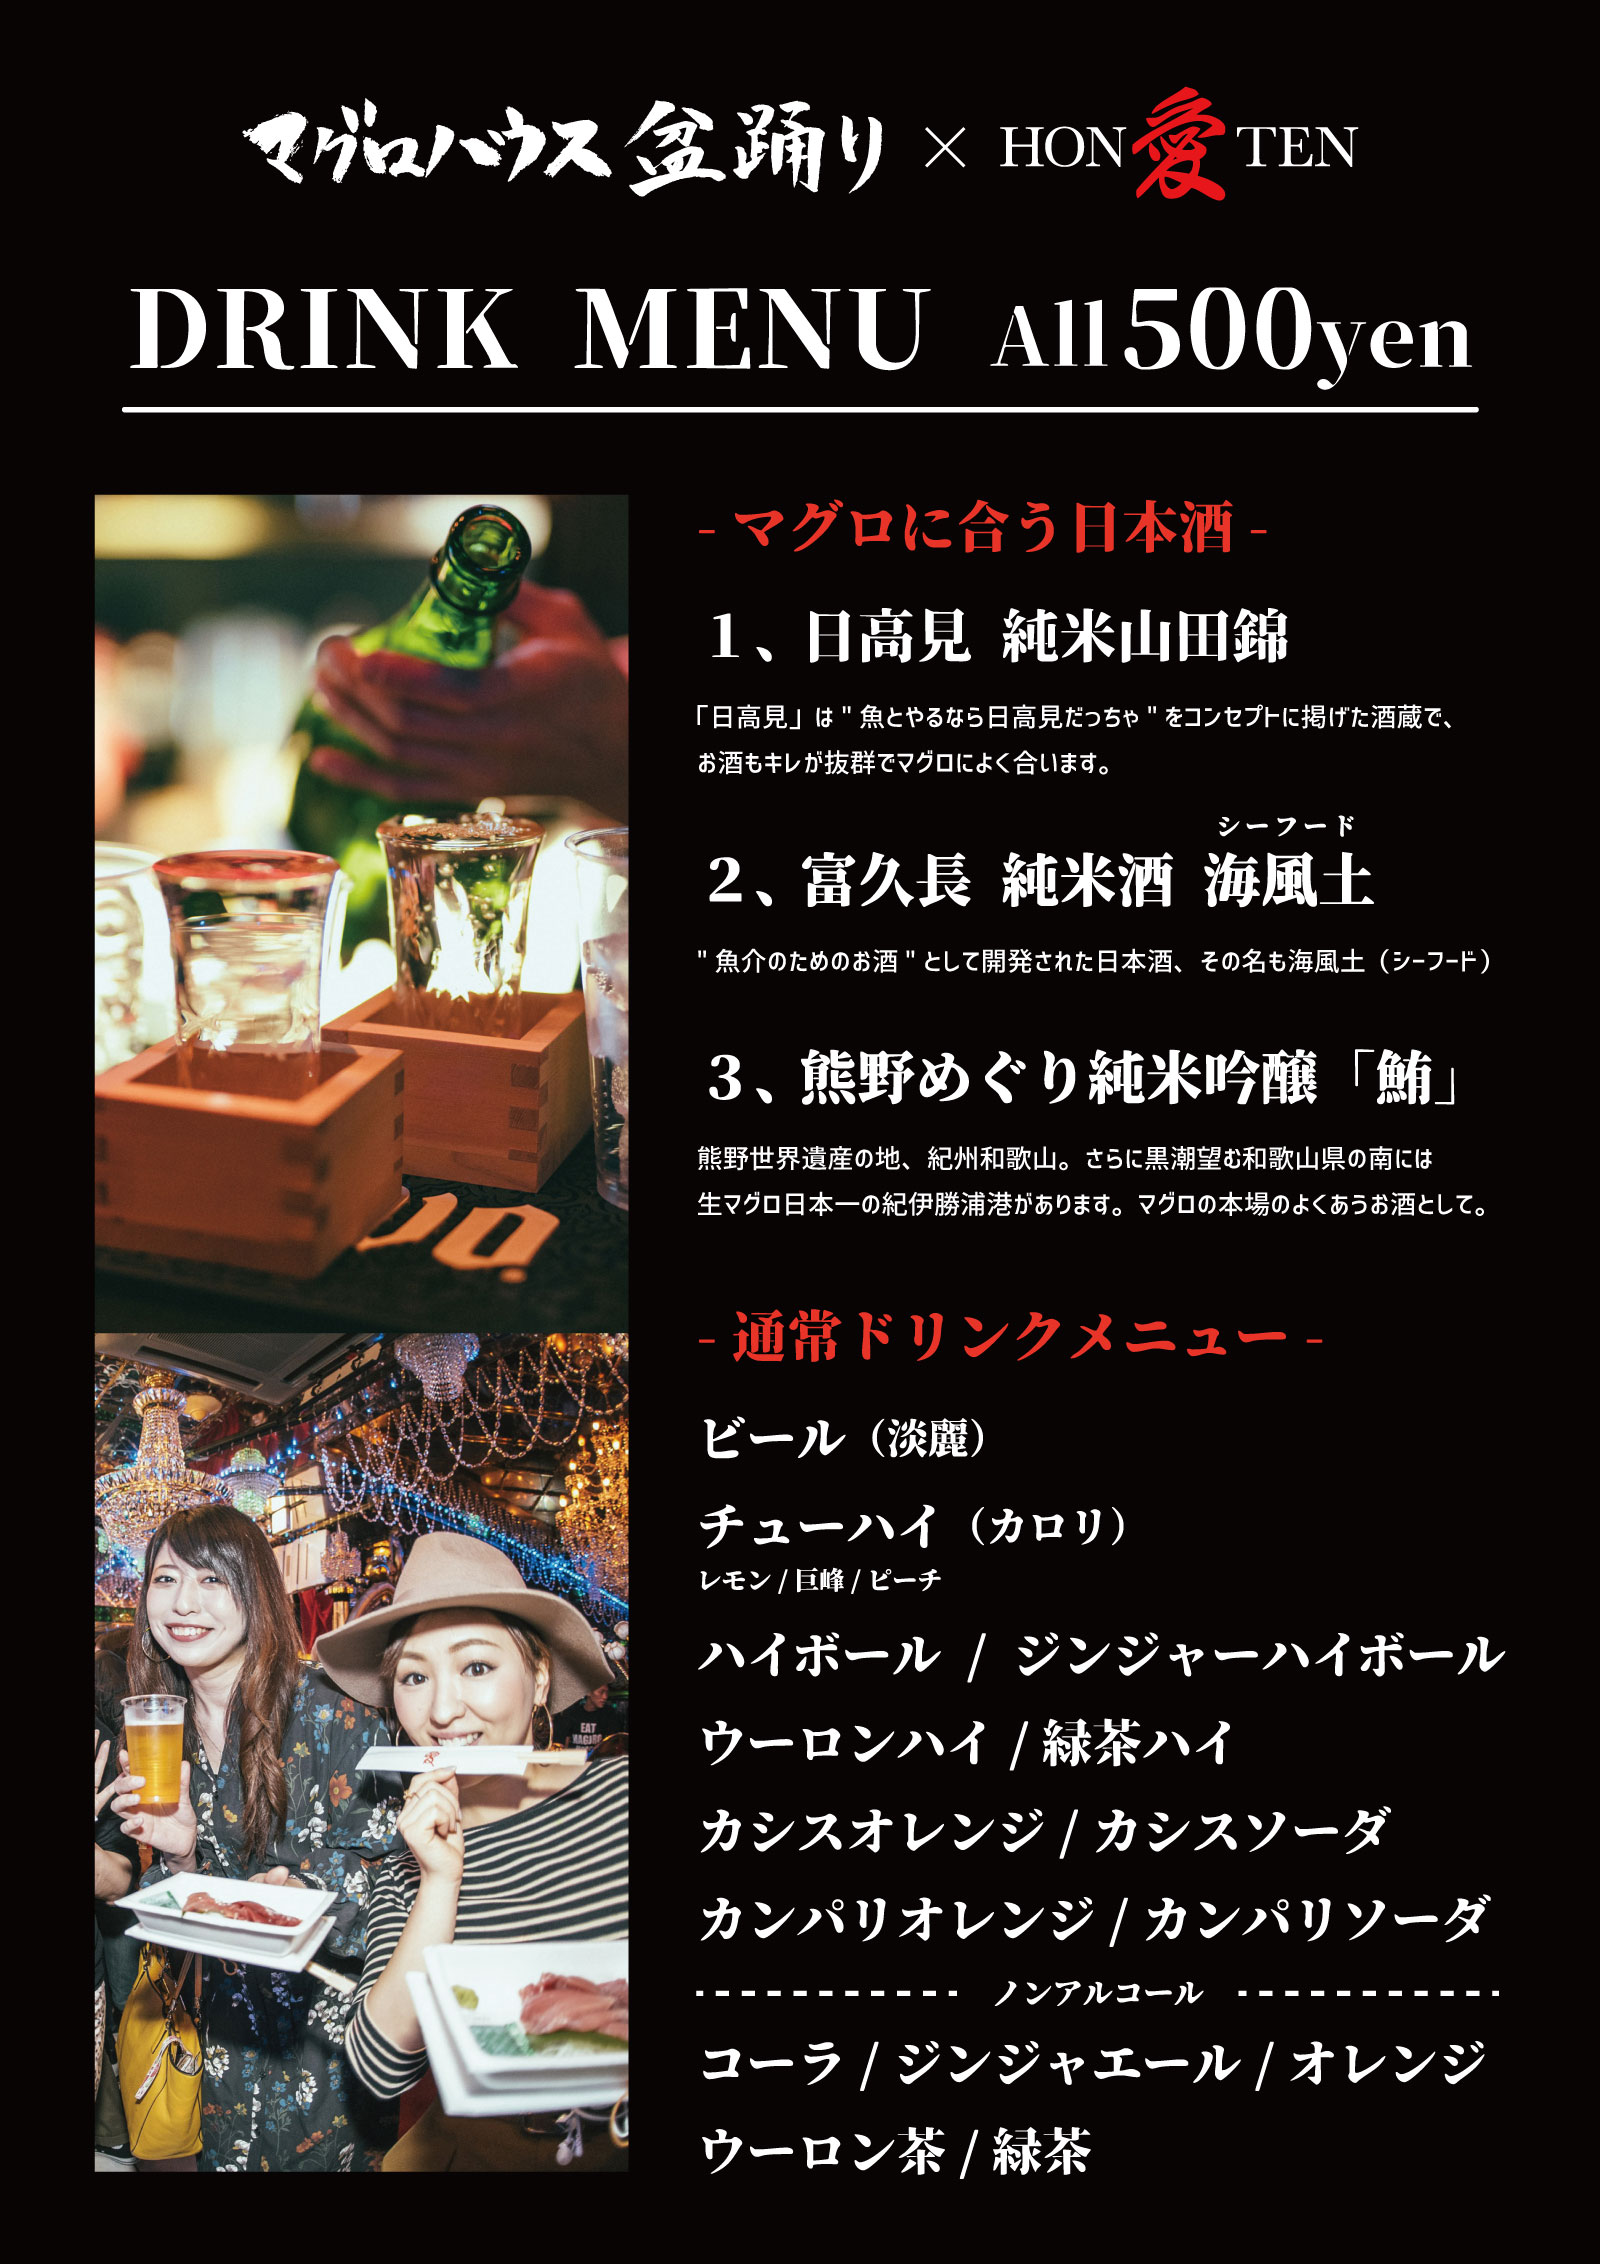 190815_magurohouse2019_aihonten_drink